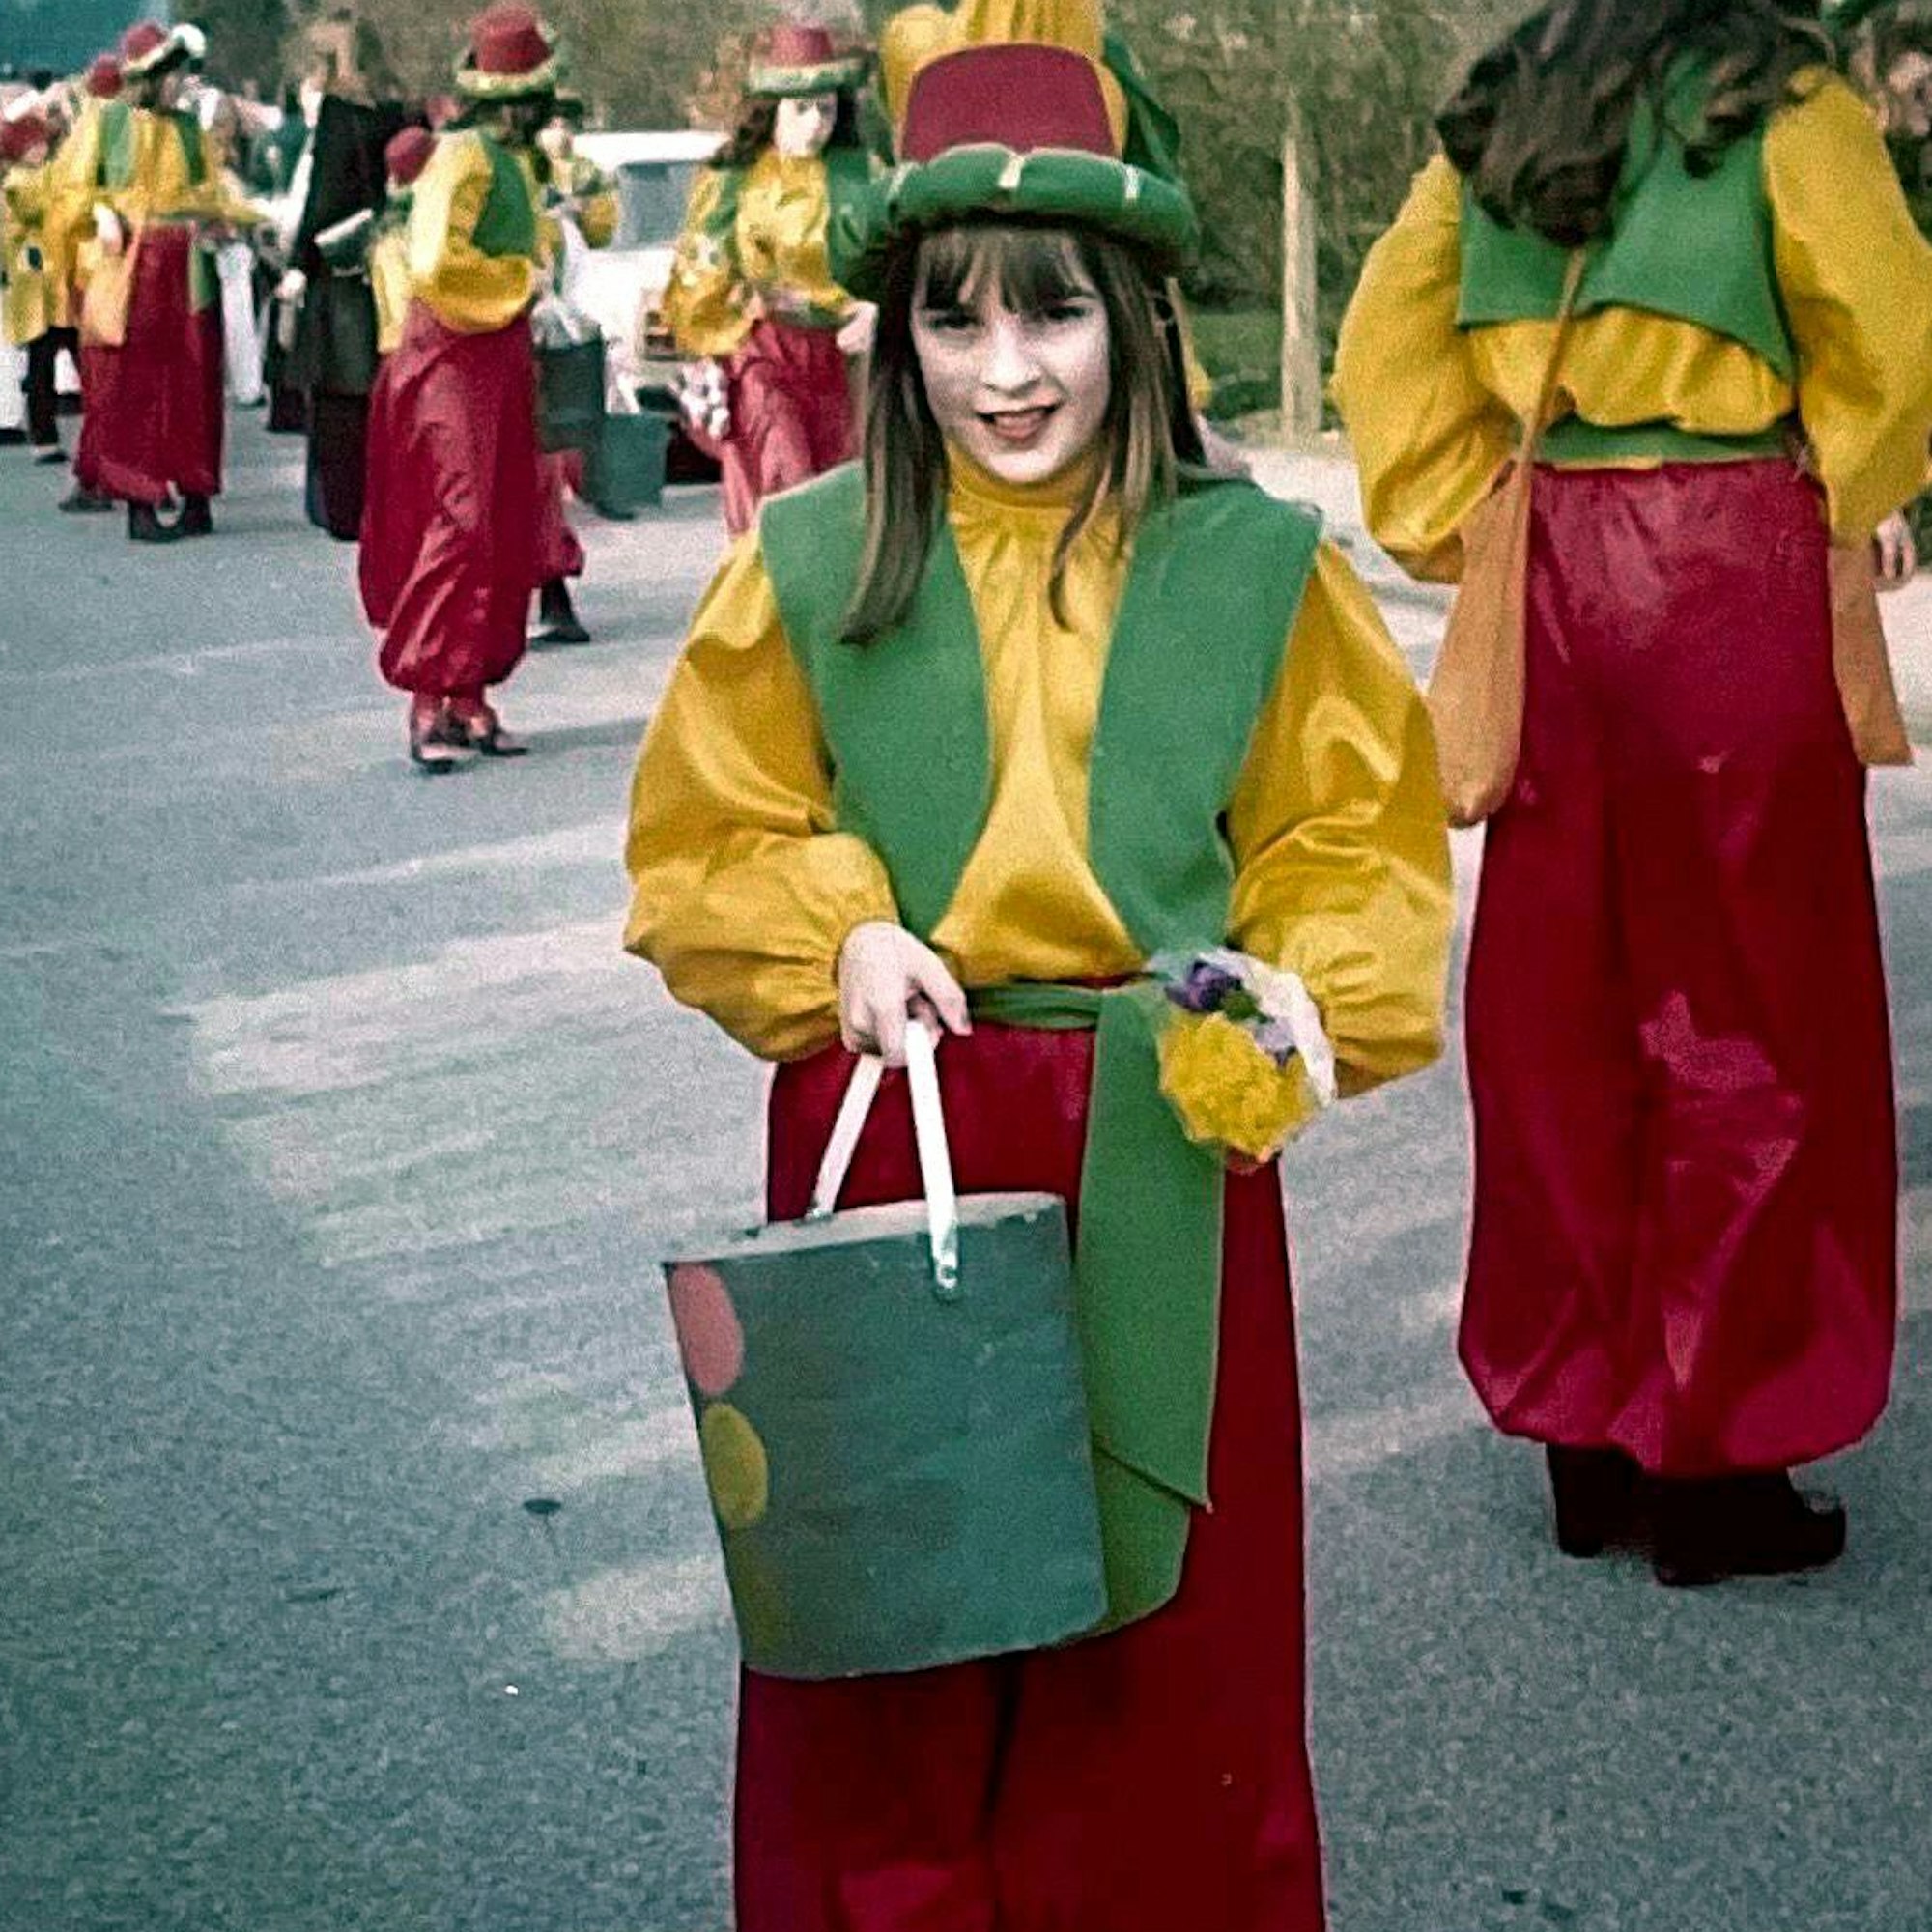 Ein Mädchen im Kostüm steht in einer Karnevalsgruppe eines Festumzugs.